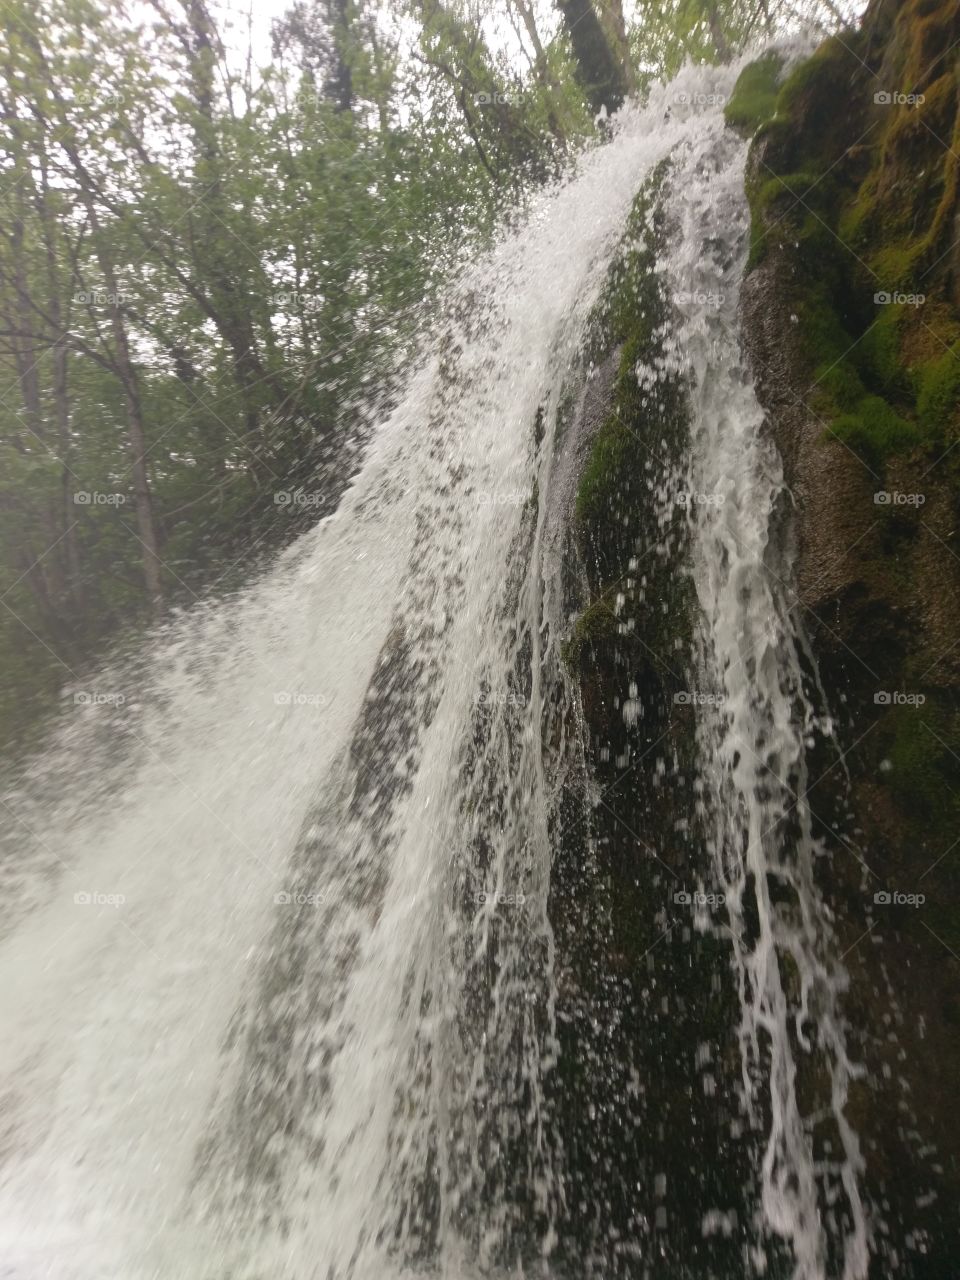 Waterfall on Tara river